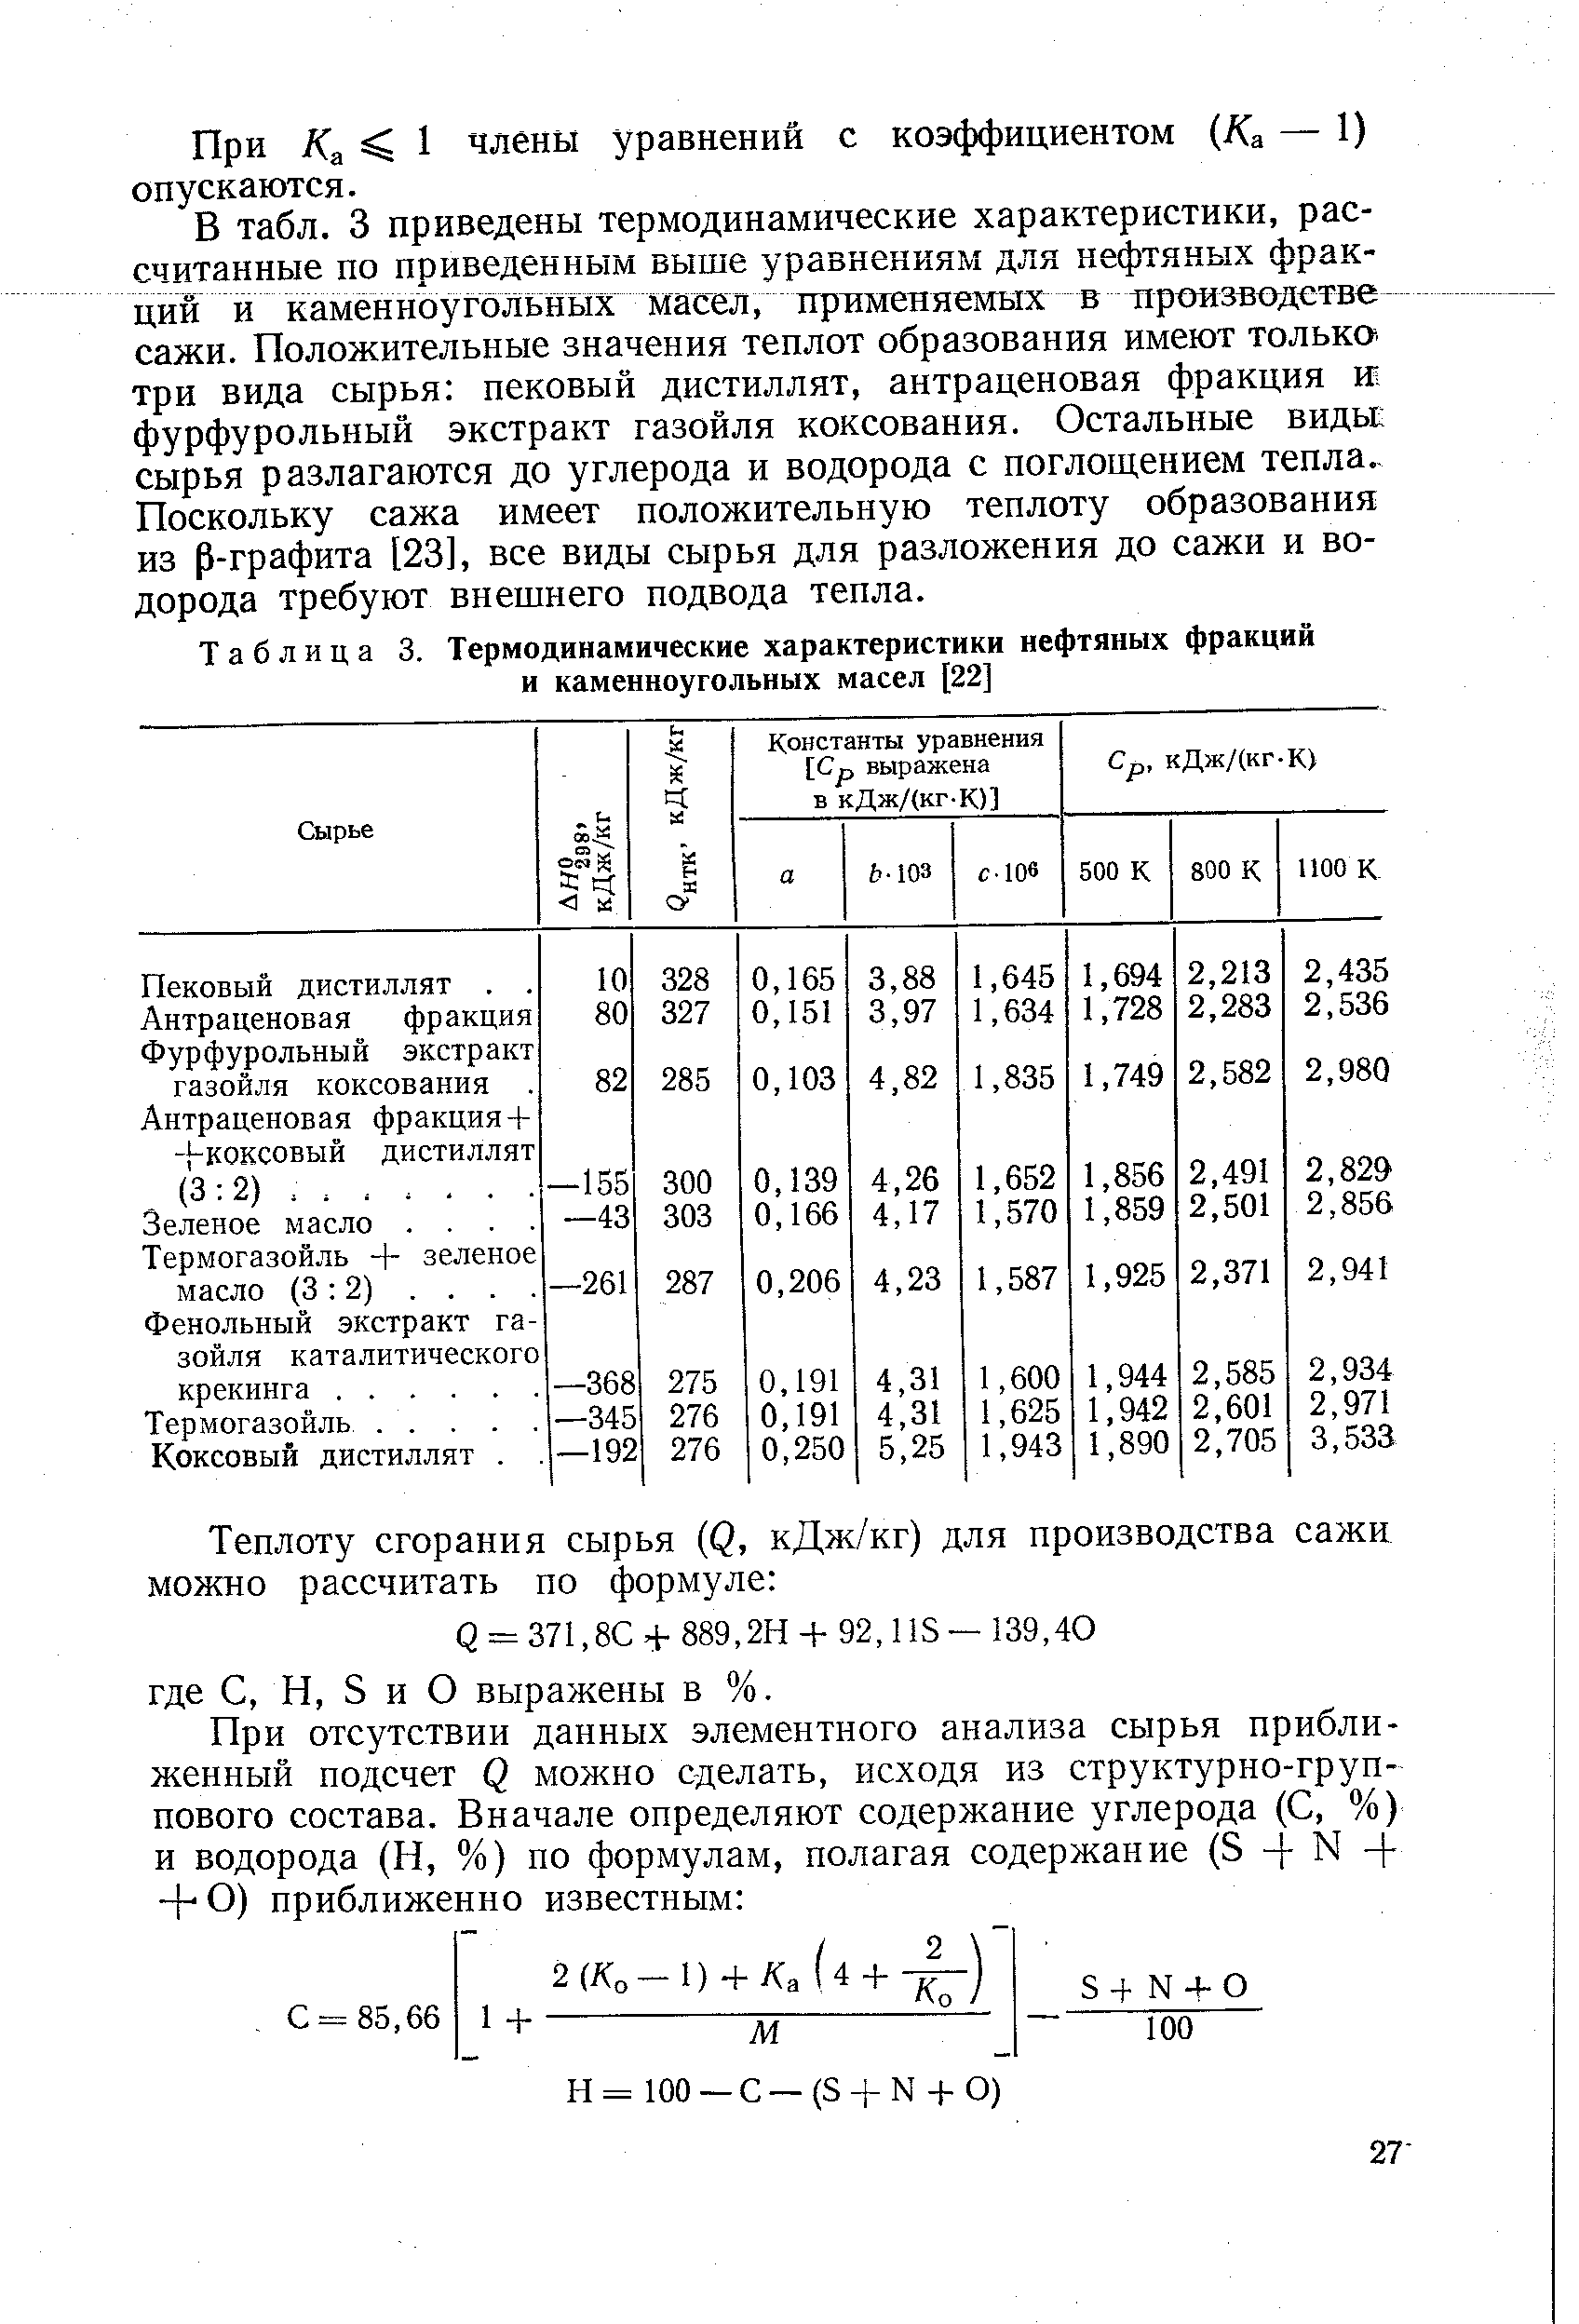 При /Са 1 члены уравнений с коэффициентом (/Са — 1) опускаются.